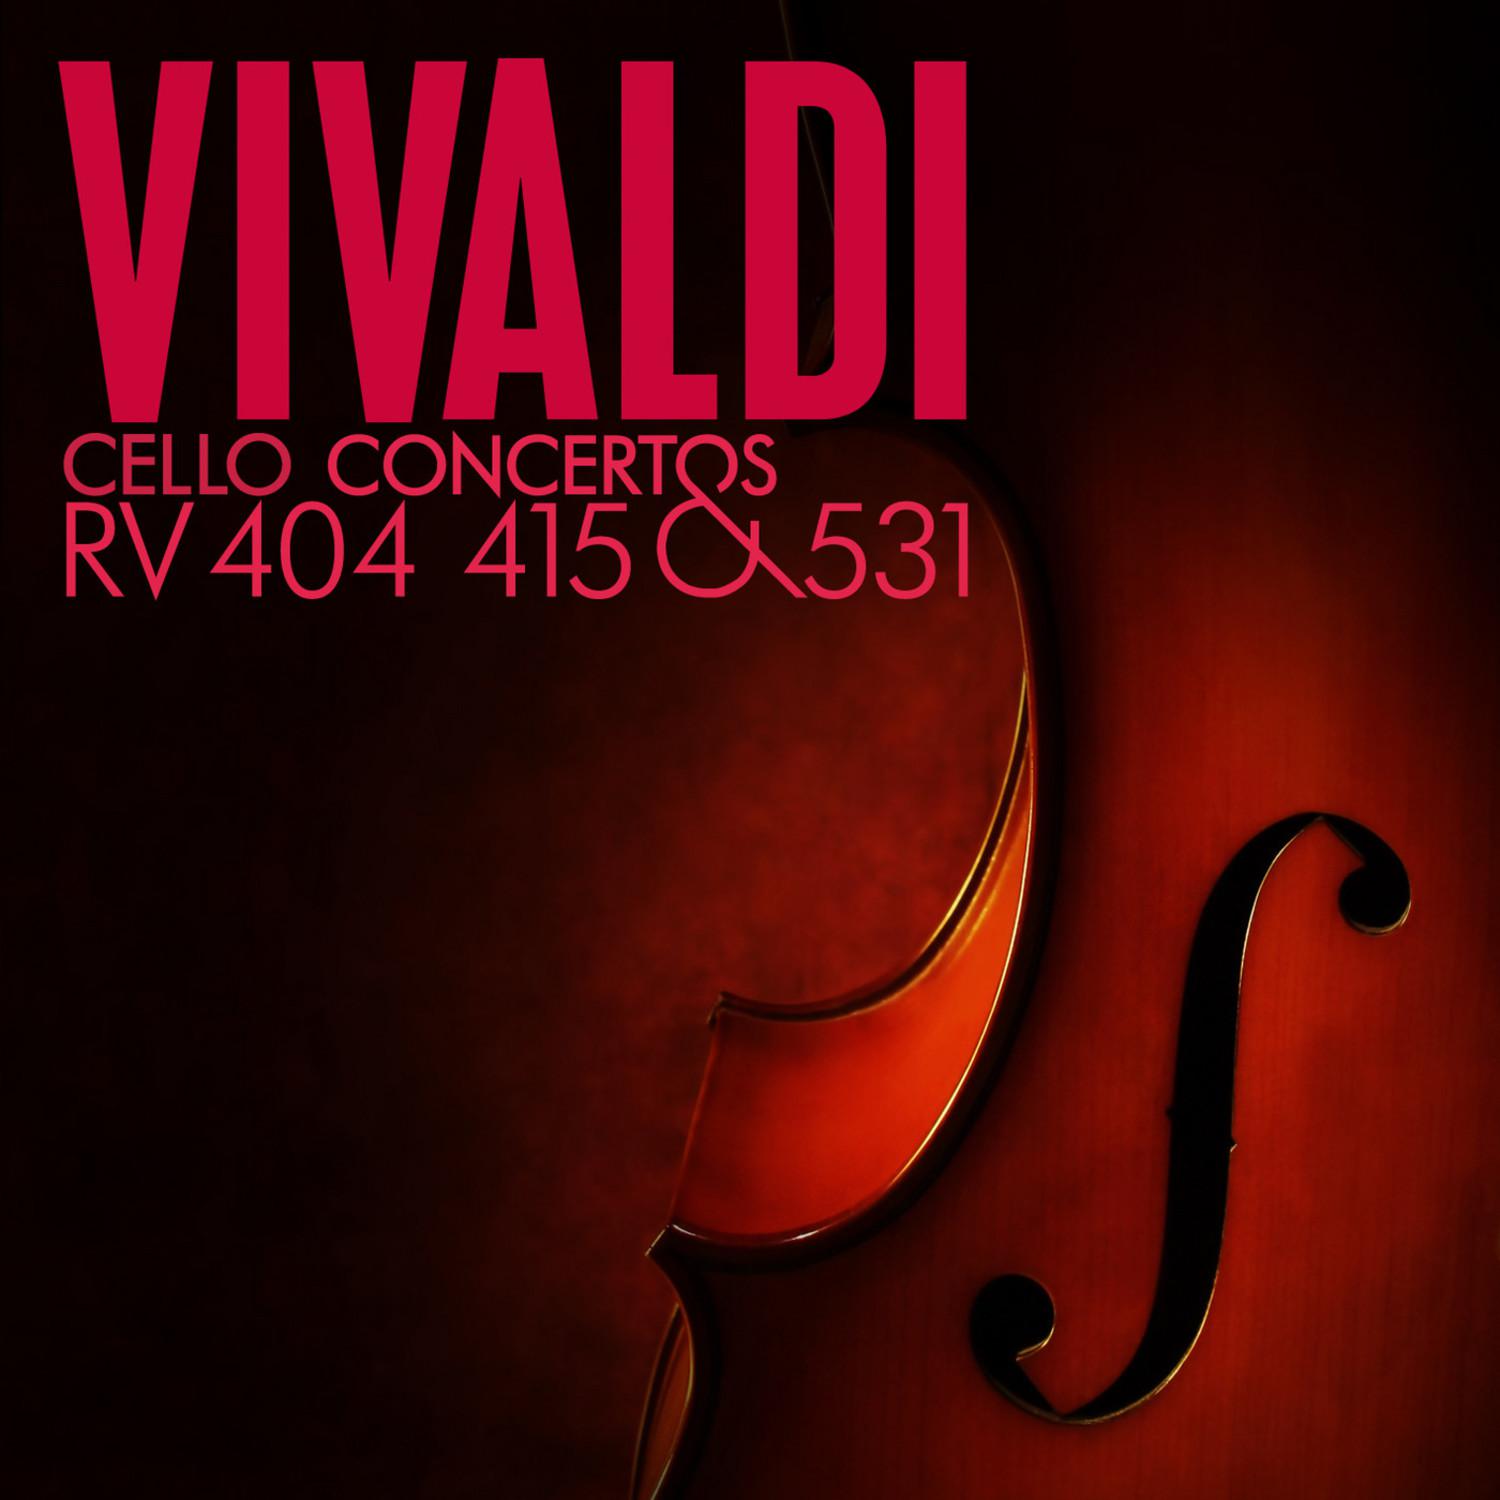 Double Cello Concerto in G Minor, RV 531: III. Allegro